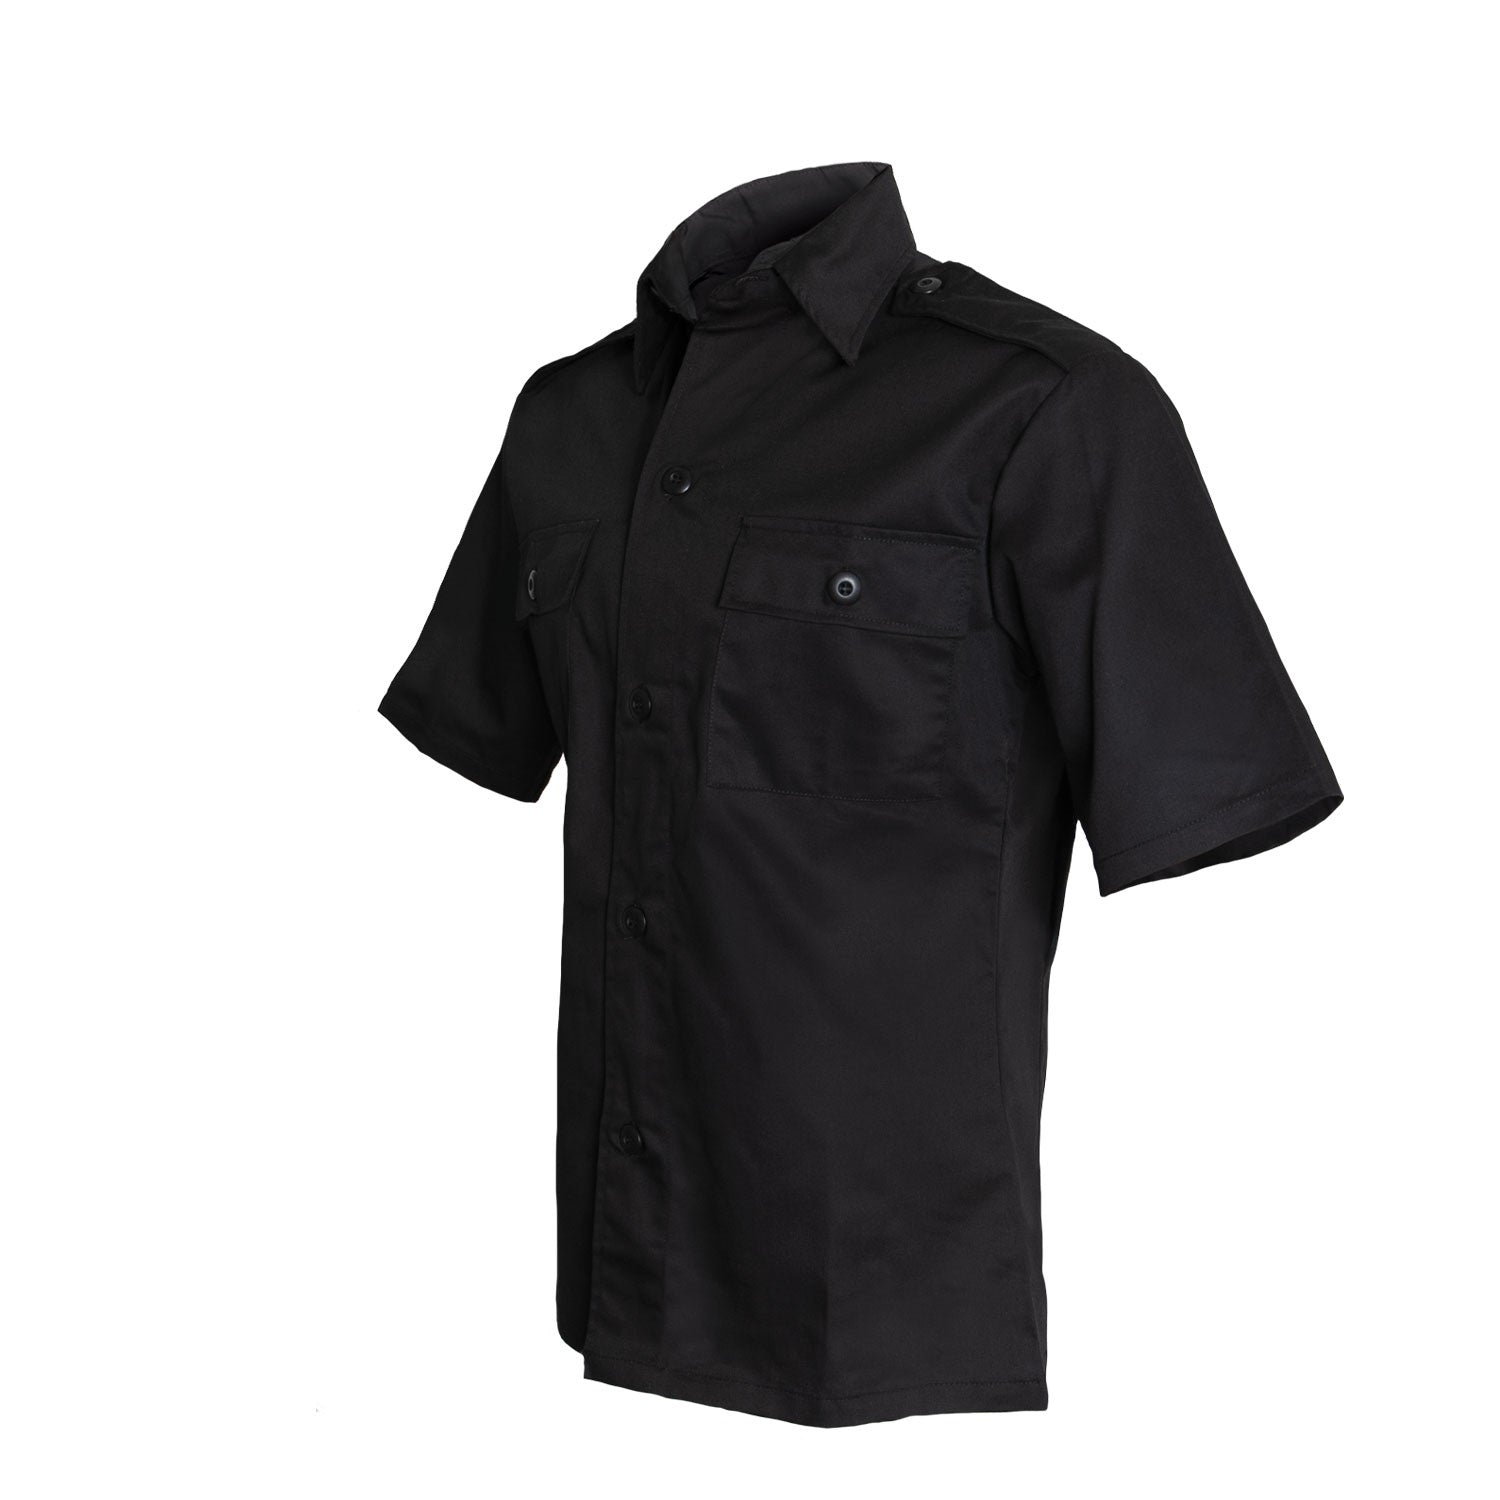 Rothco Short Sleeve Tactical Shirt Black